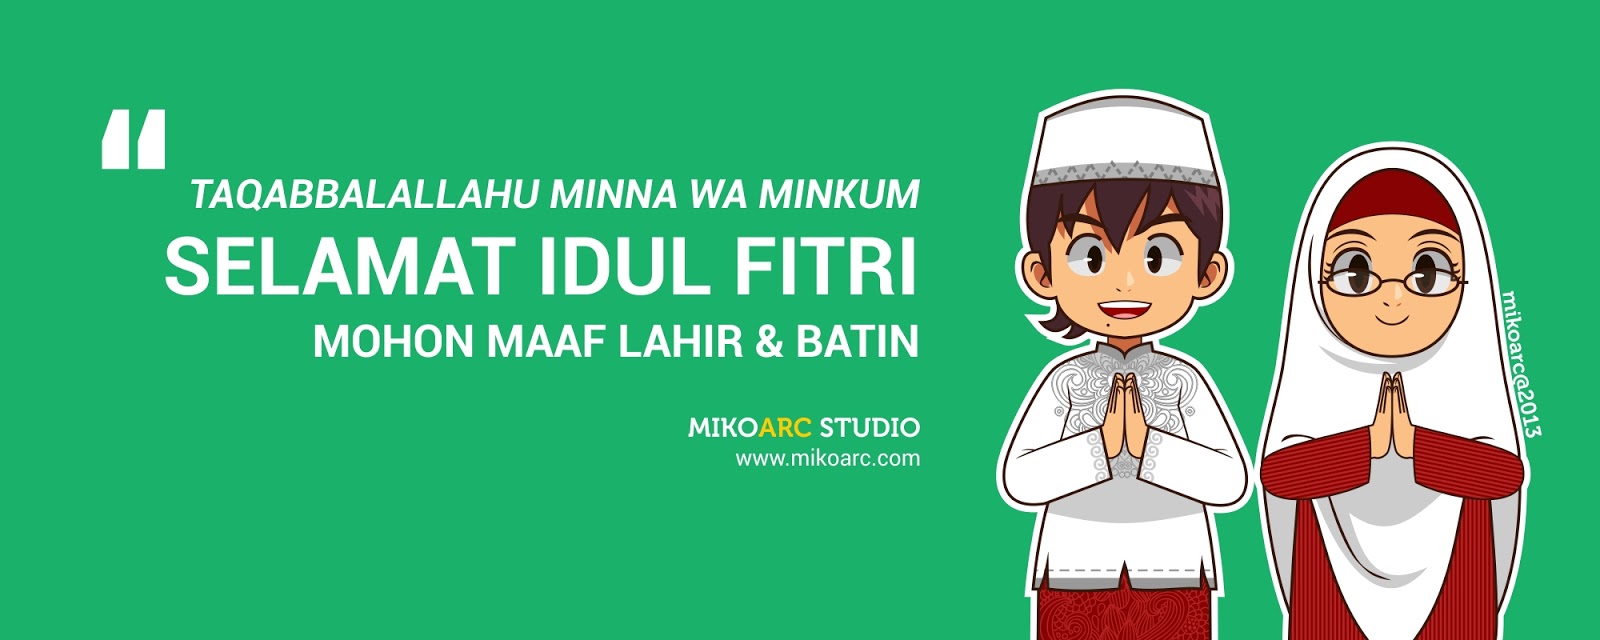 MIKOARC STUDIO Hari Raya Idul Fitri 2013 Beda Lagi